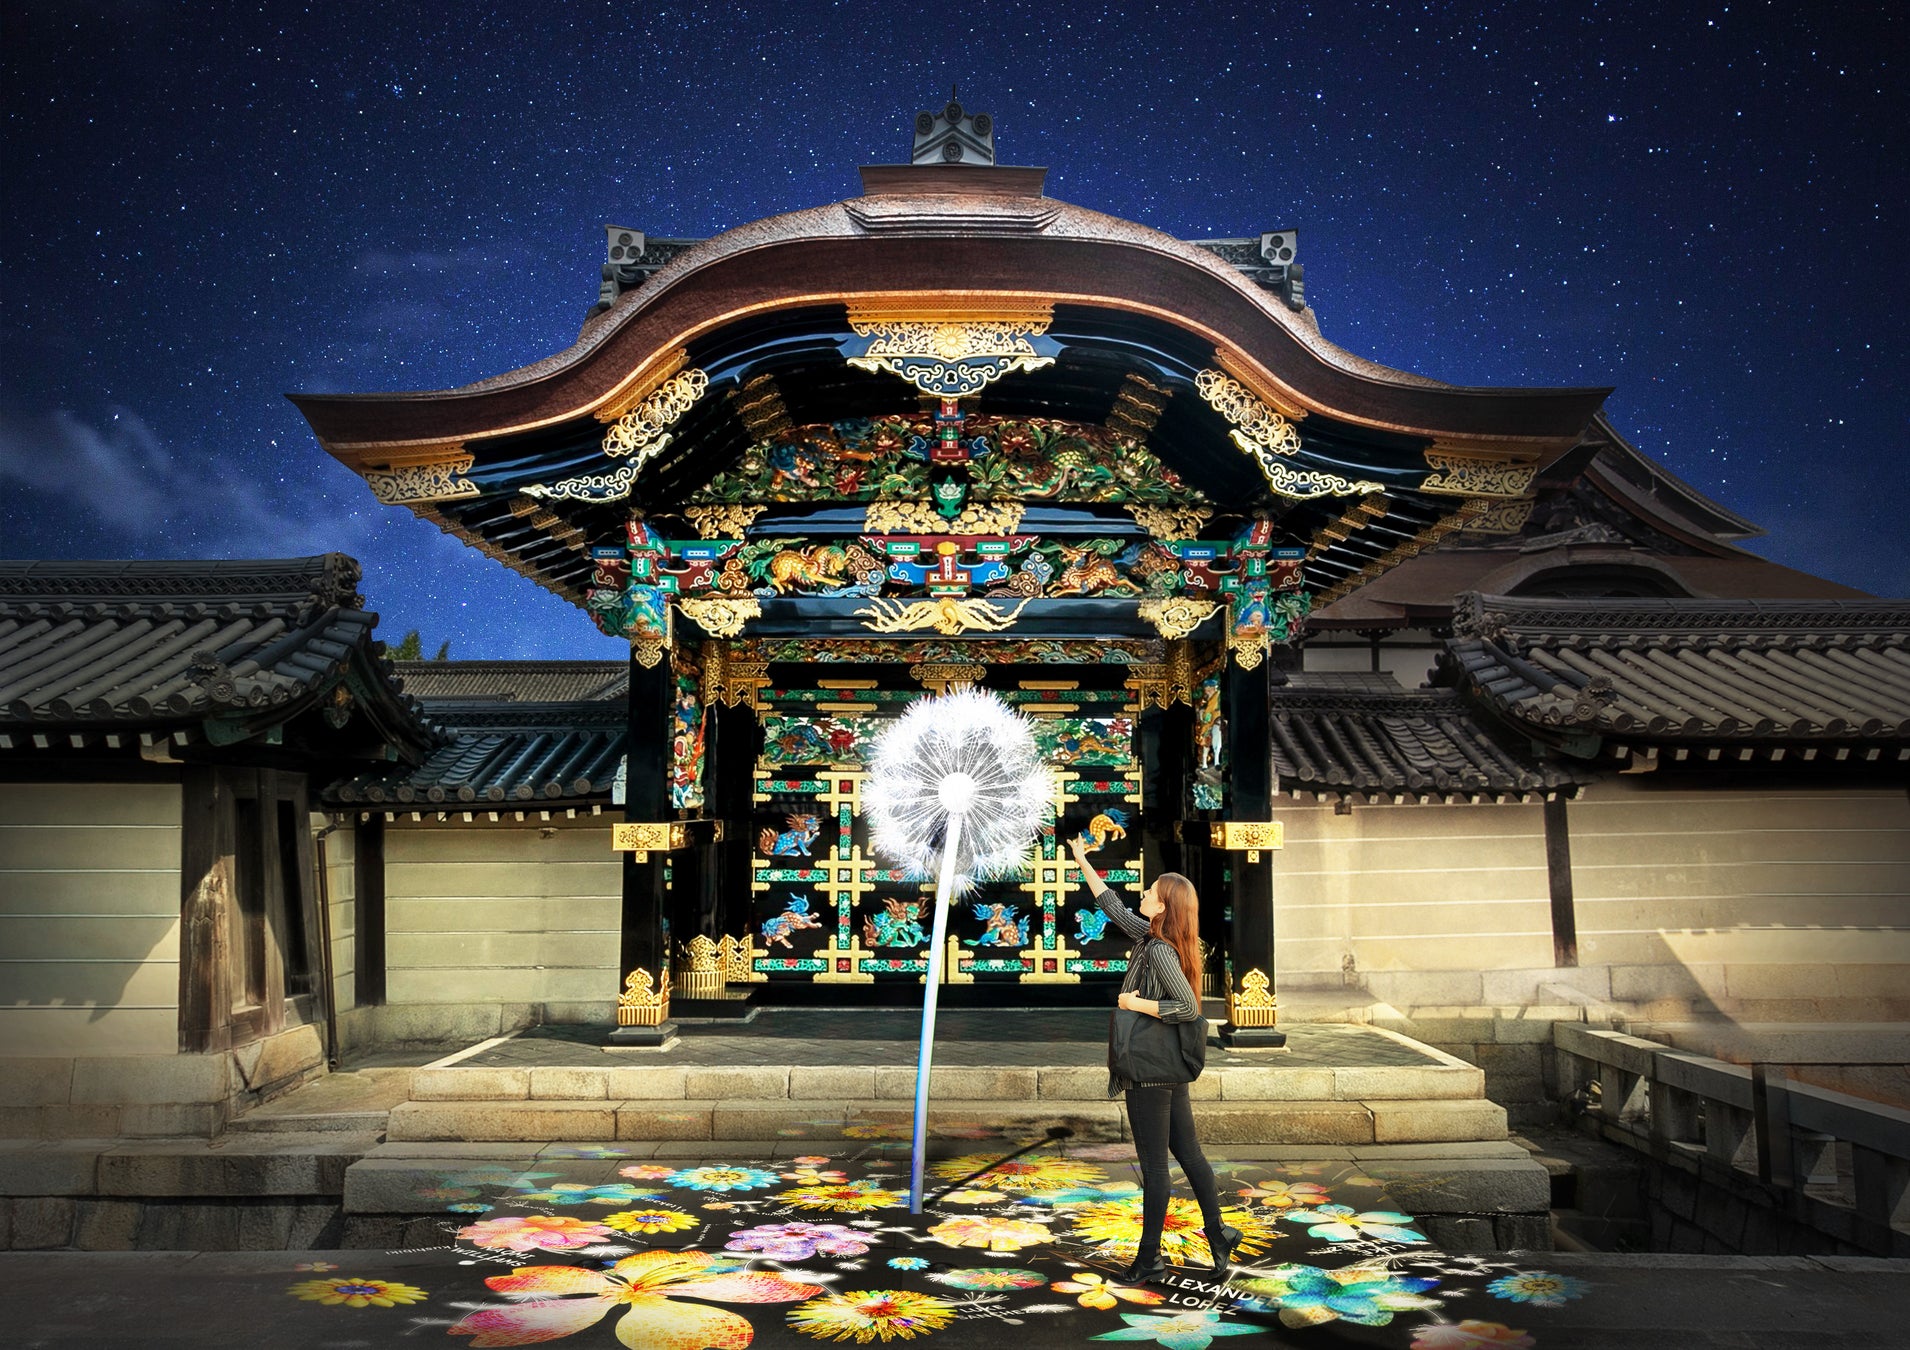 西本願寺の国宝・唐門に、世界と繋がるアートプロジェクト『DANDELION PROJECT』